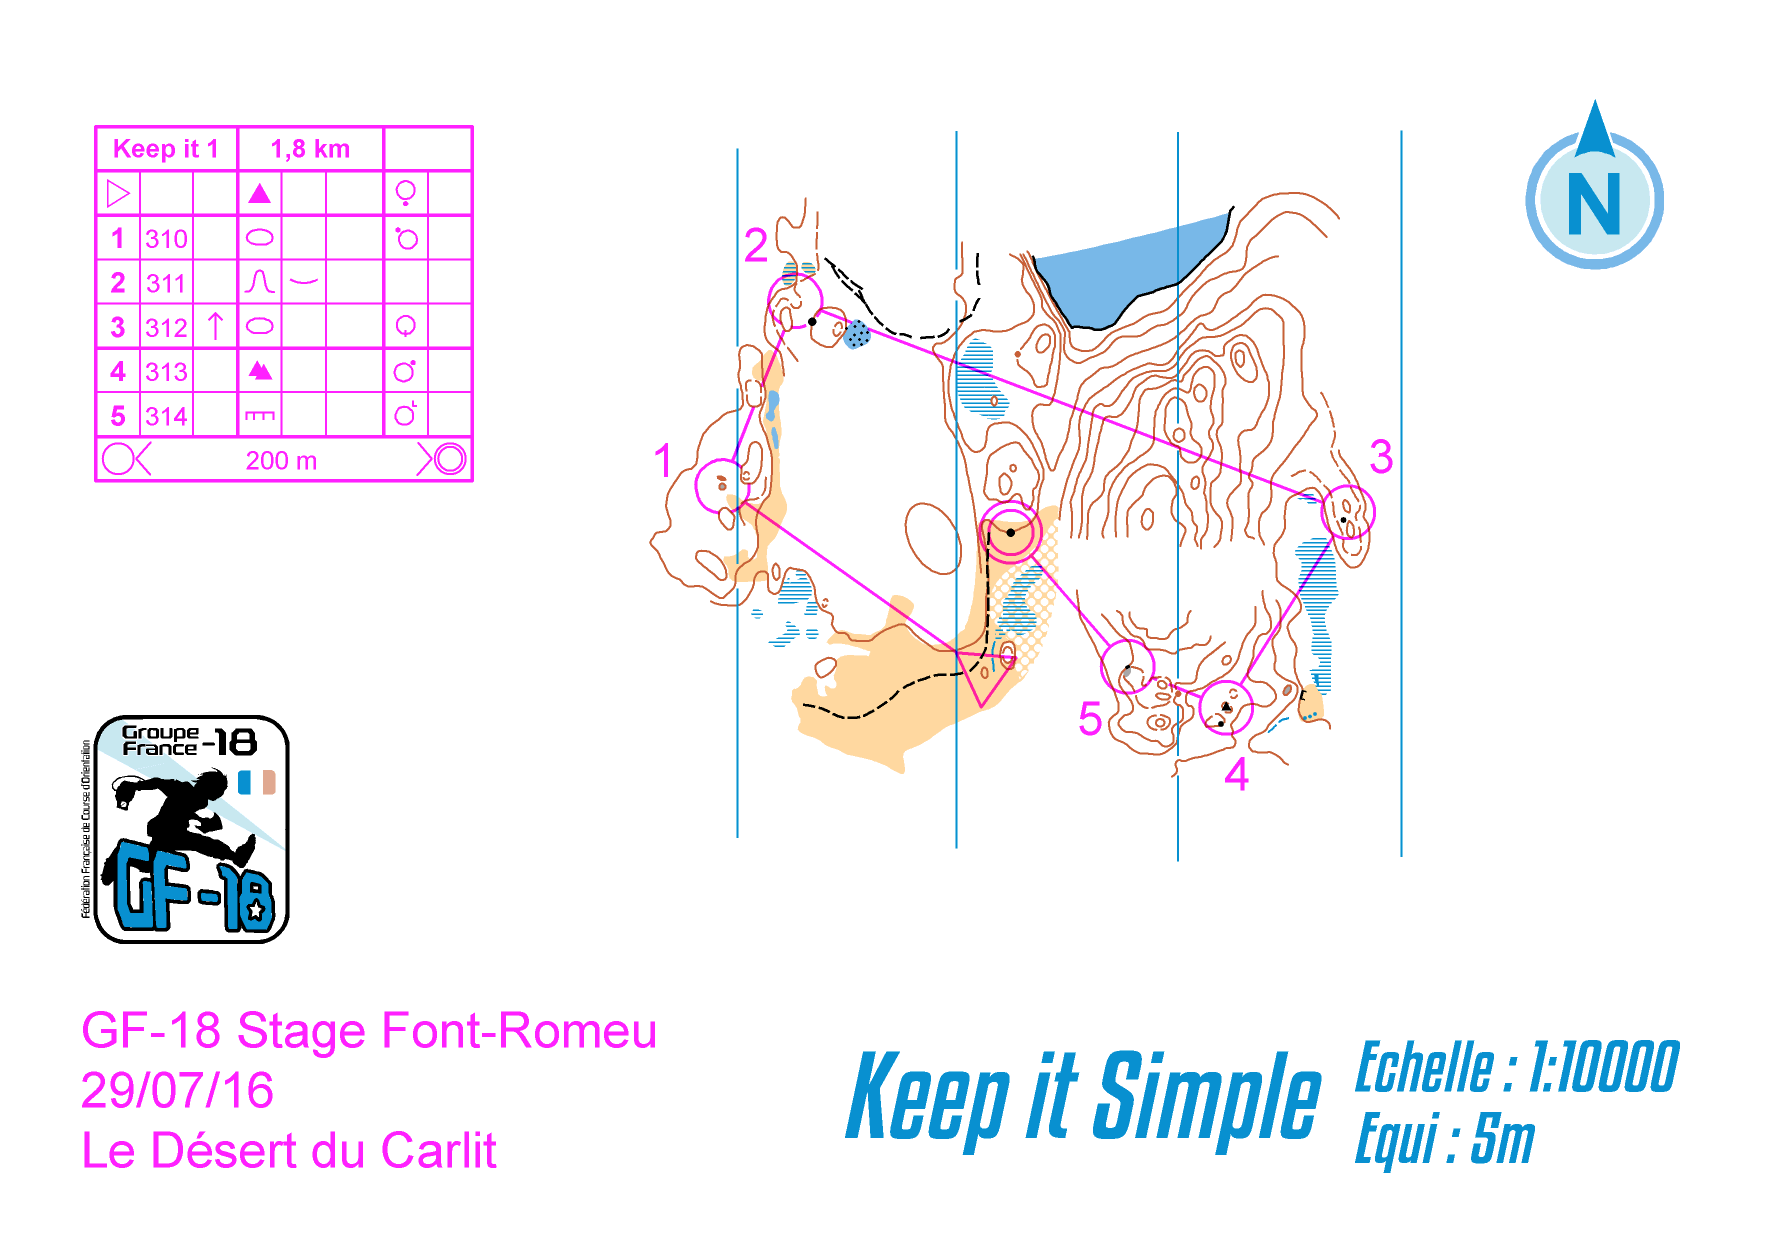 keep it simple 1 (28/08/2016)